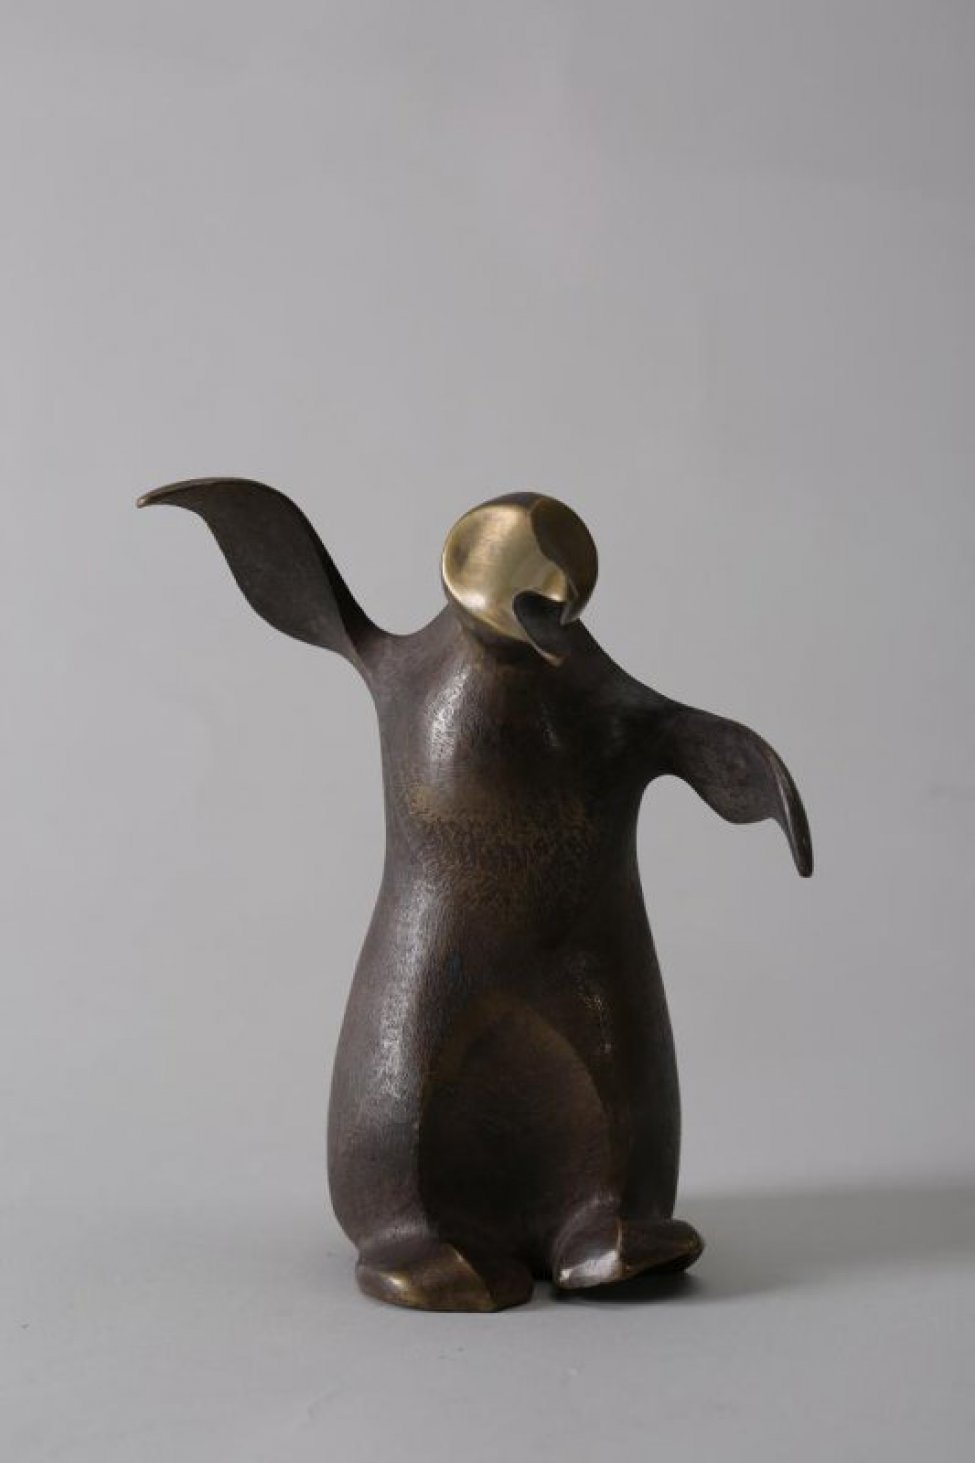 Обобщенно трактованная фигура пингвина, вытянувшего голову с открытым клювом; крылья широко расставлены, правое поднято выше левого.